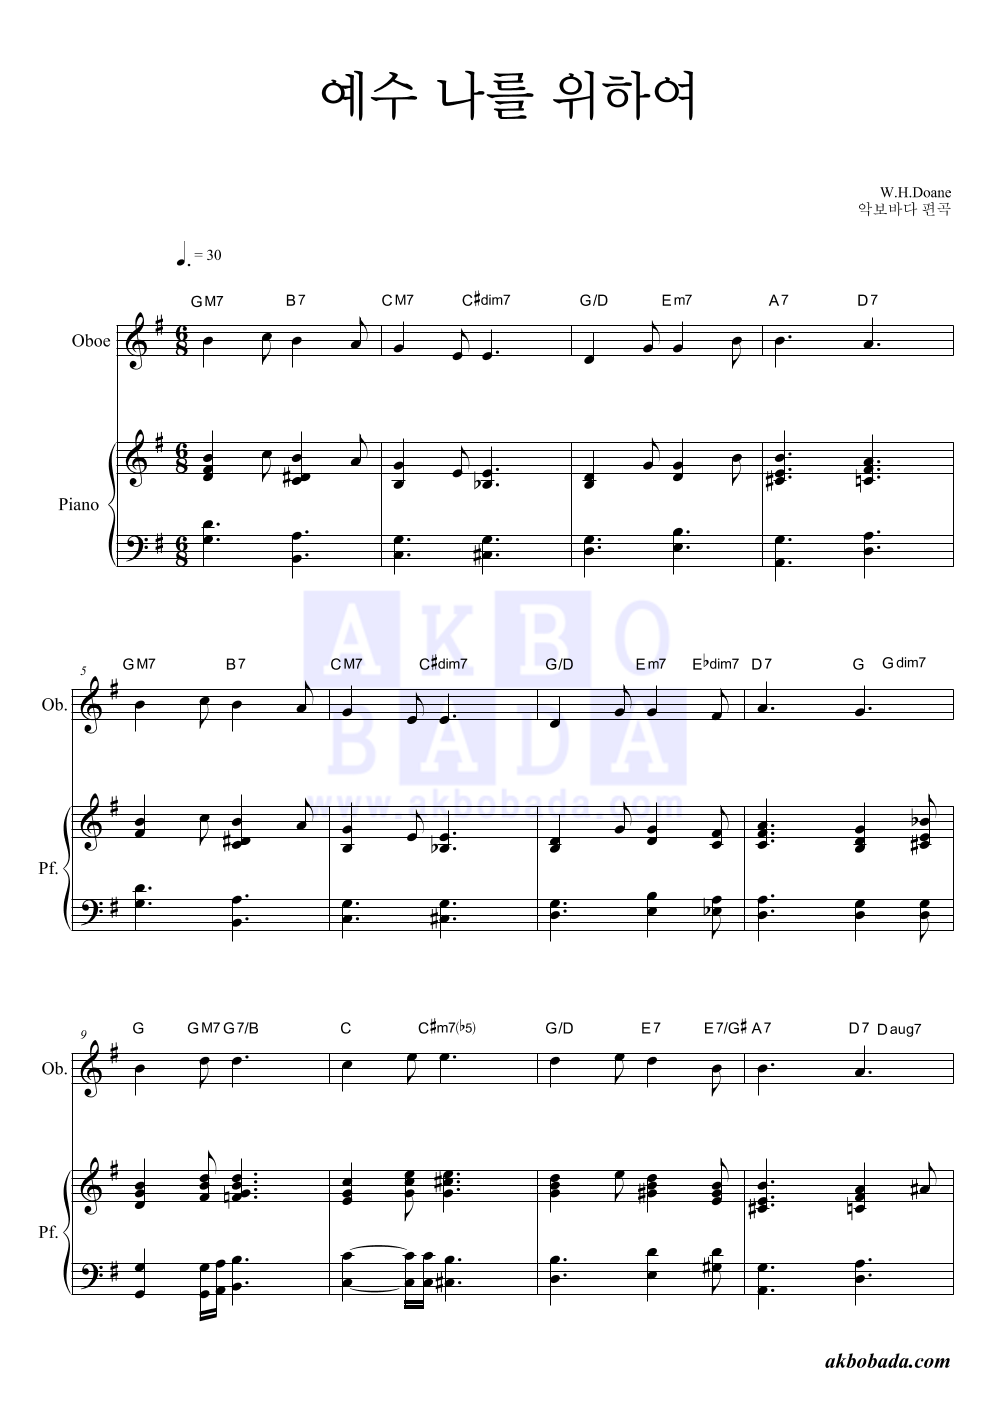 찬송가 - 예수 나를 위하여 오보에&피아노 악보 